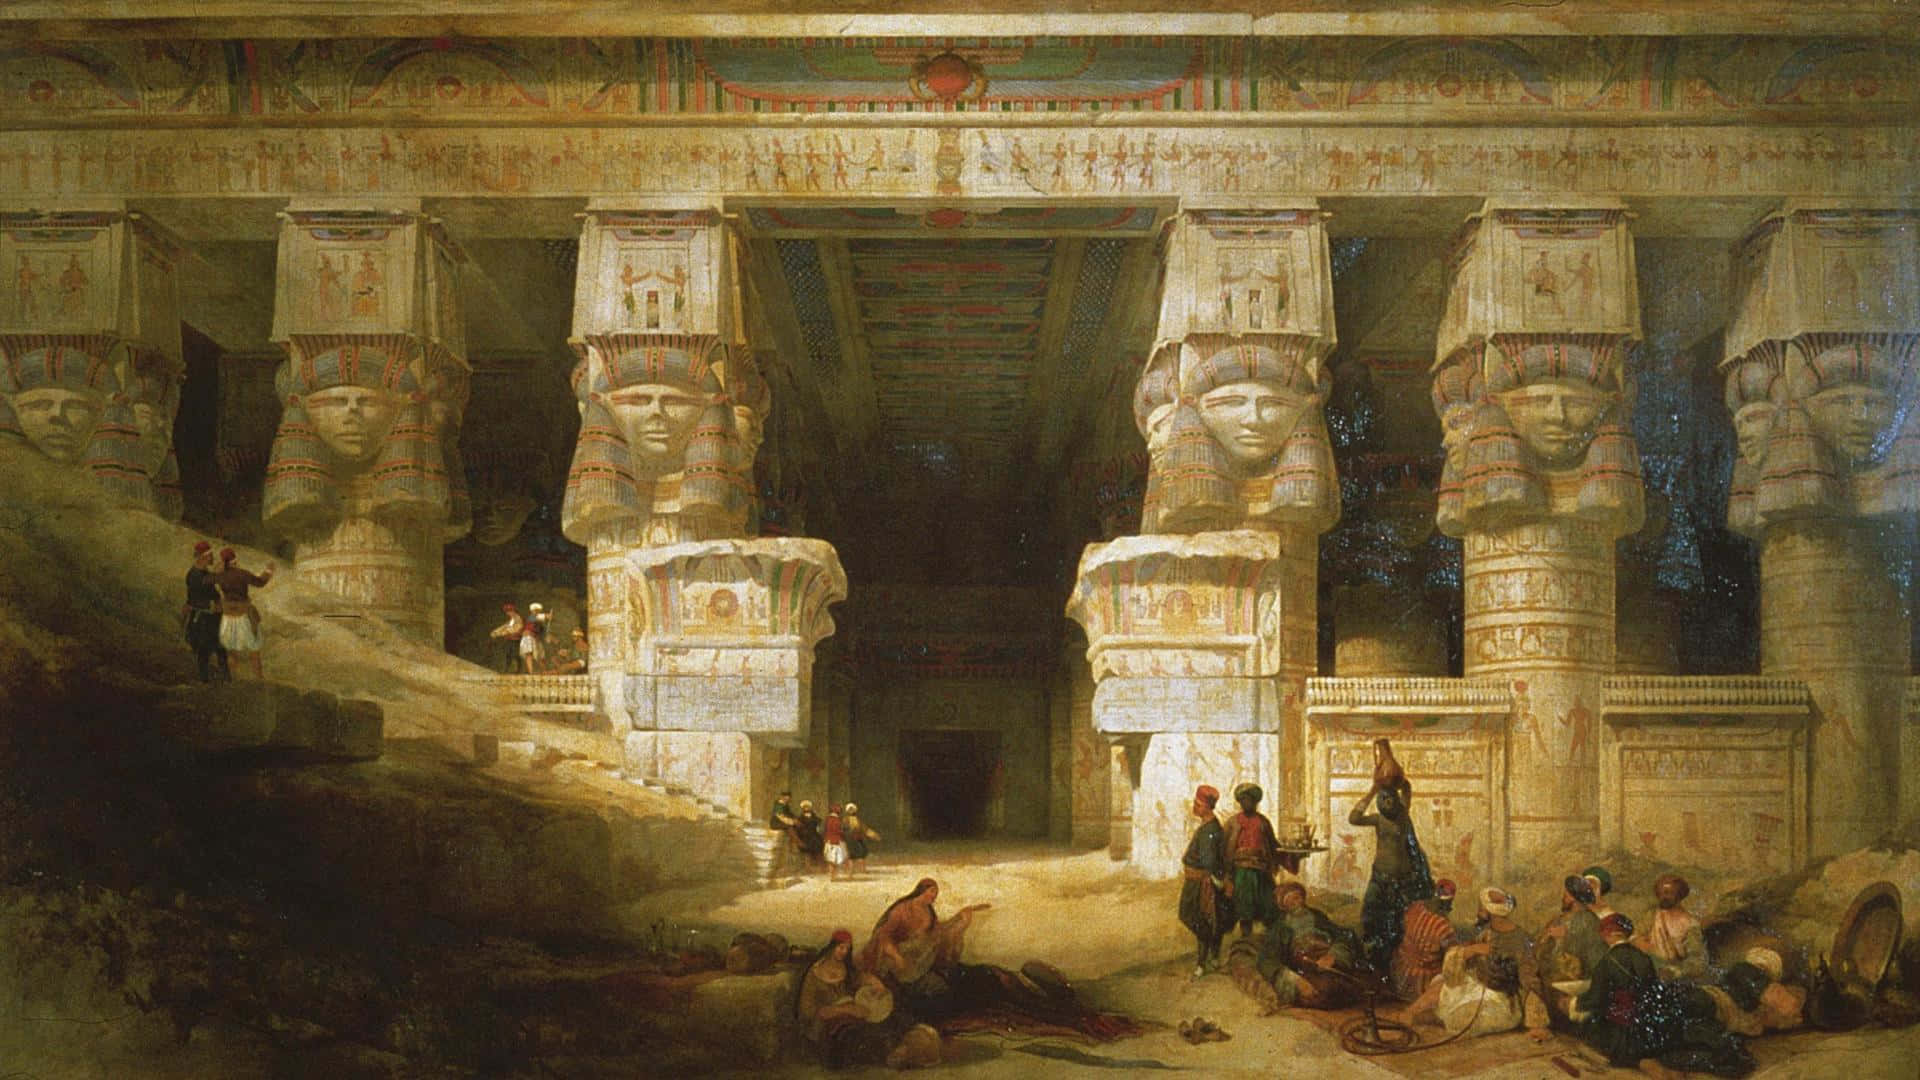 Eingemälde Eines Ägyptischen Tempels Mit Menschen Darin. Wallpaper